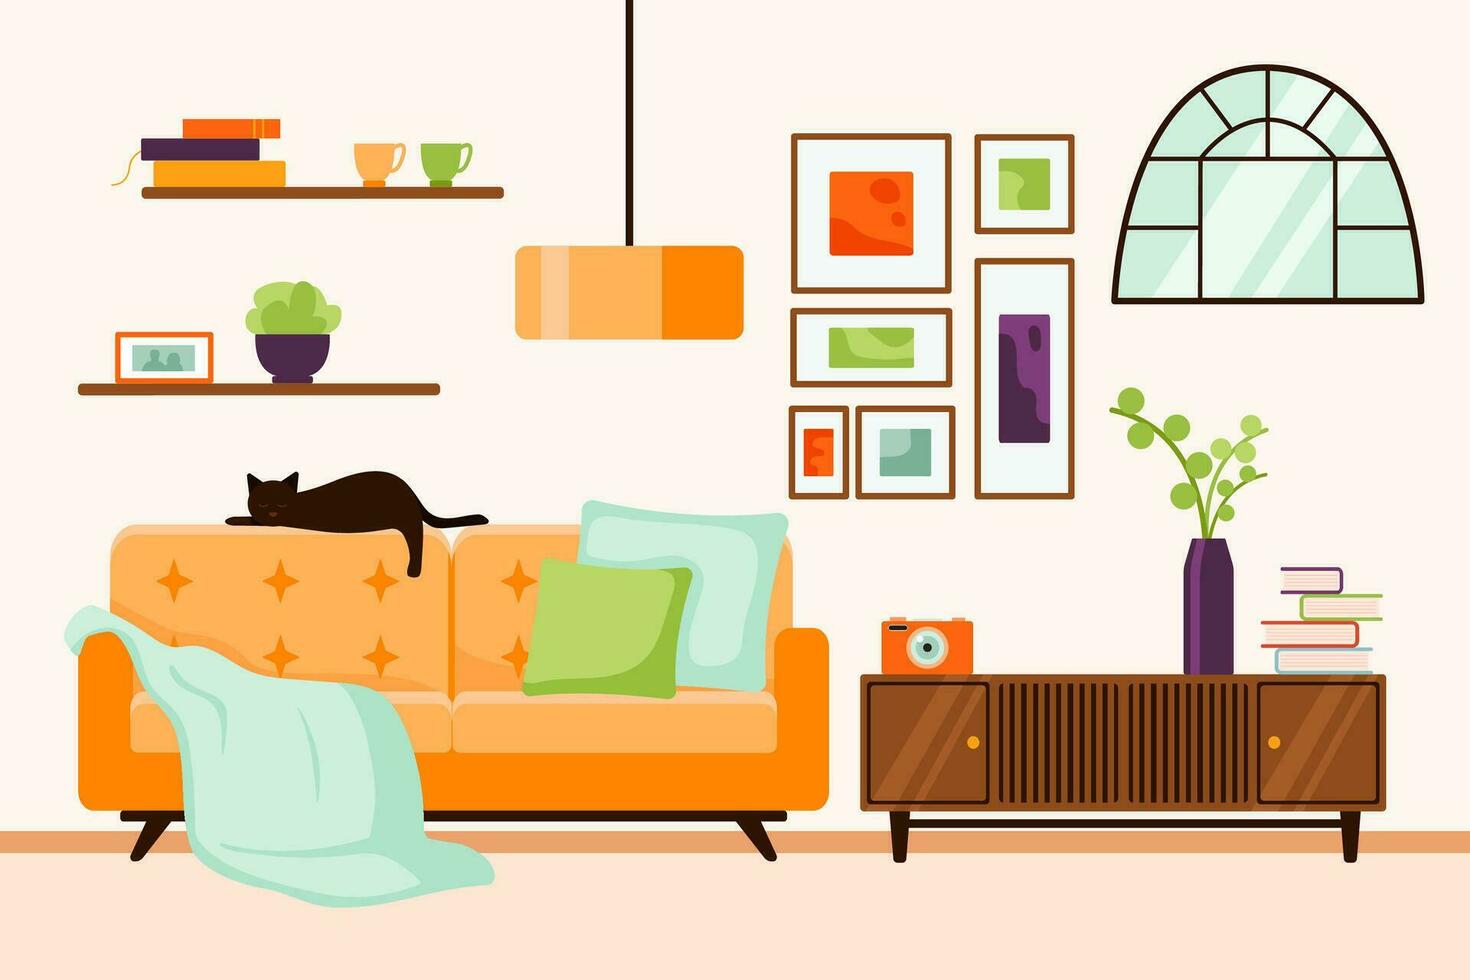 Leben Zimmer Innere mit Möbel, Zimmerpflanzen im Töpfe, Katze, Sofa, Lampe. Vektor Illustration von Wohnung im eben Stil.